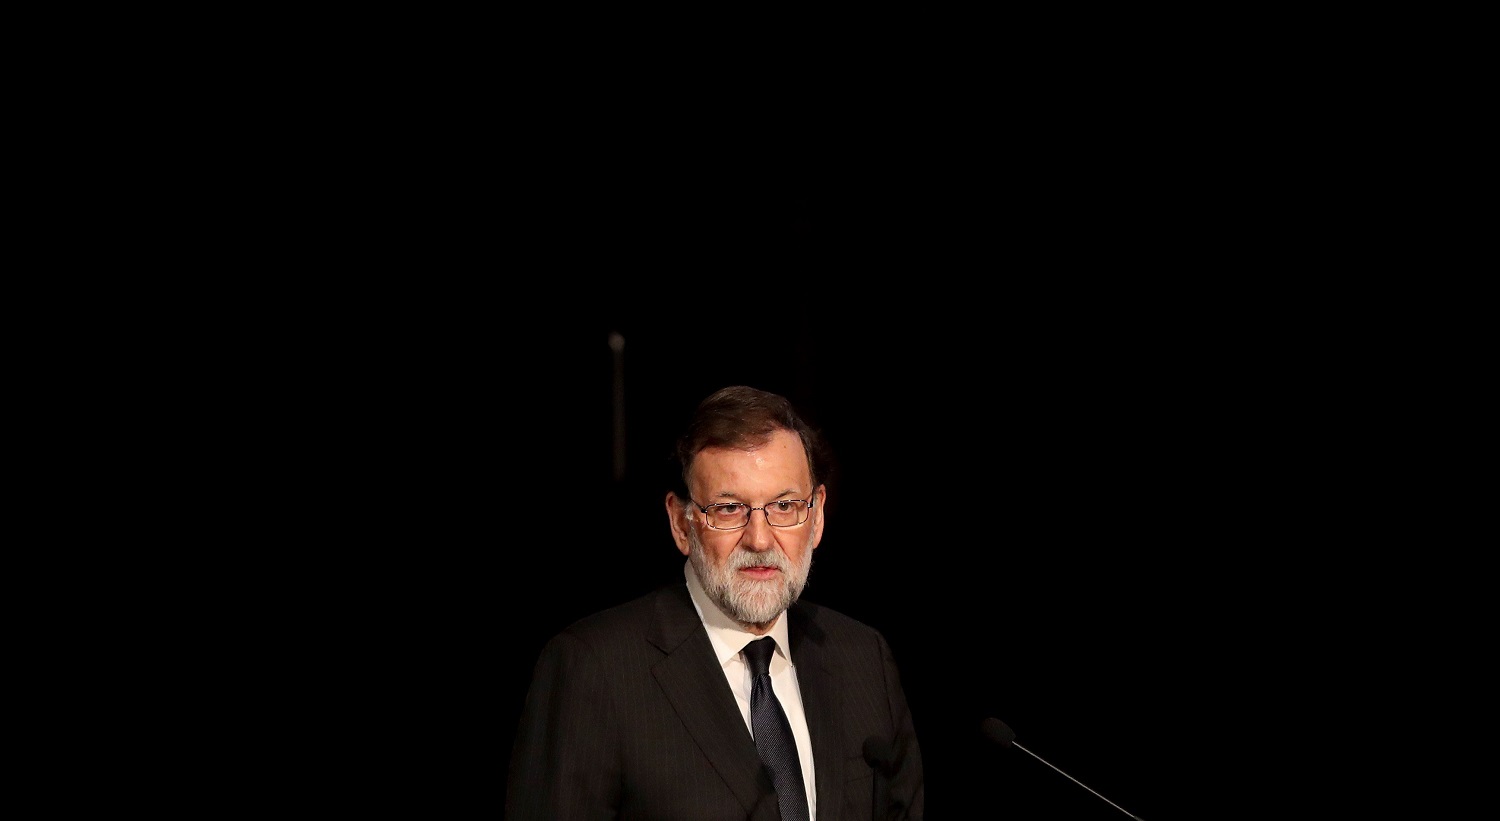 Rajoy aseguró que dará la batalla en defensa del pueblo hermano de Venezuela